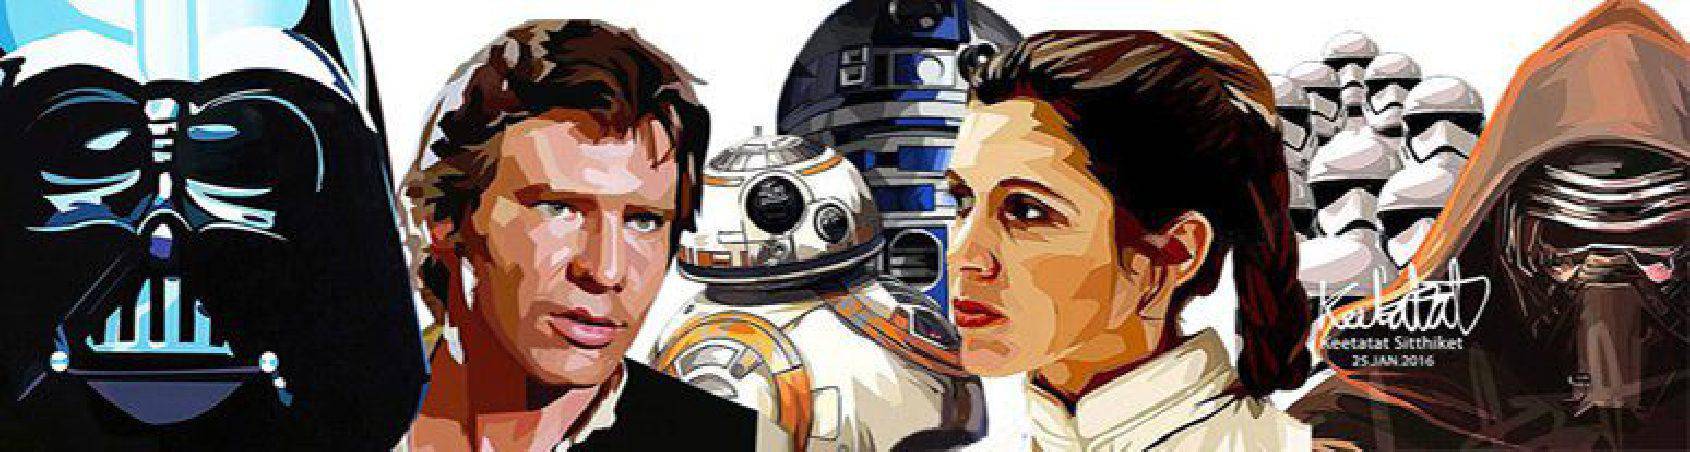 cuadros de personajes y composiciones de la saga Star Wars